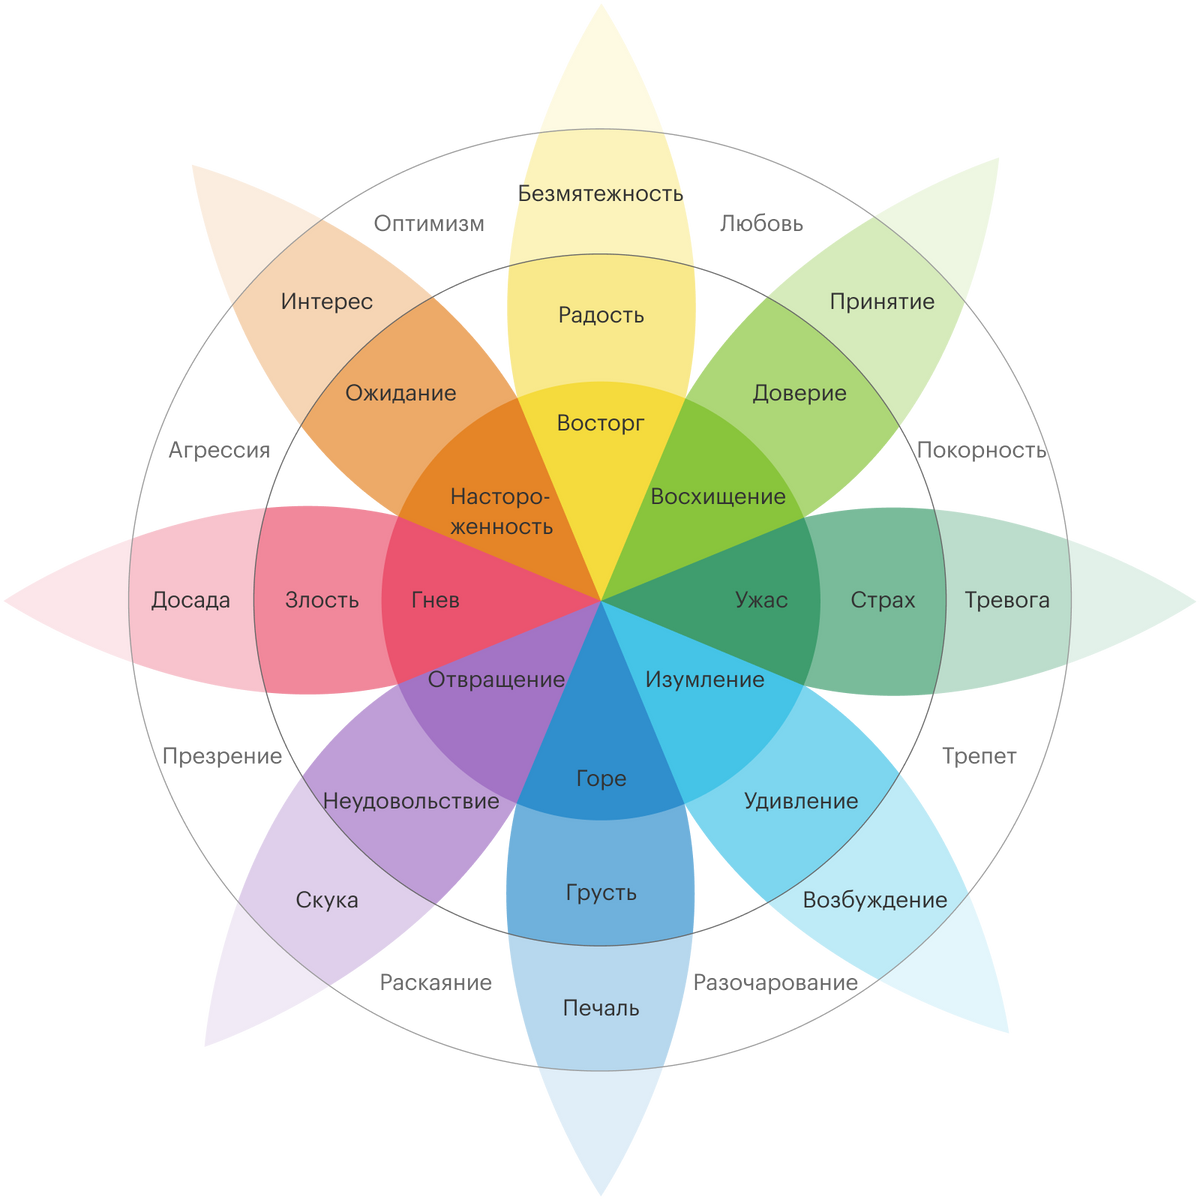 Это диаграмма американского психолога Роберта Плутчика. Здесь отражены основные чувства, их степень выраженности и комбинации. Например, гнев — это интенсивная форма злости, а досада — более слабая форма. Диаграмма поможет запомнить чувства и точнее их выражать